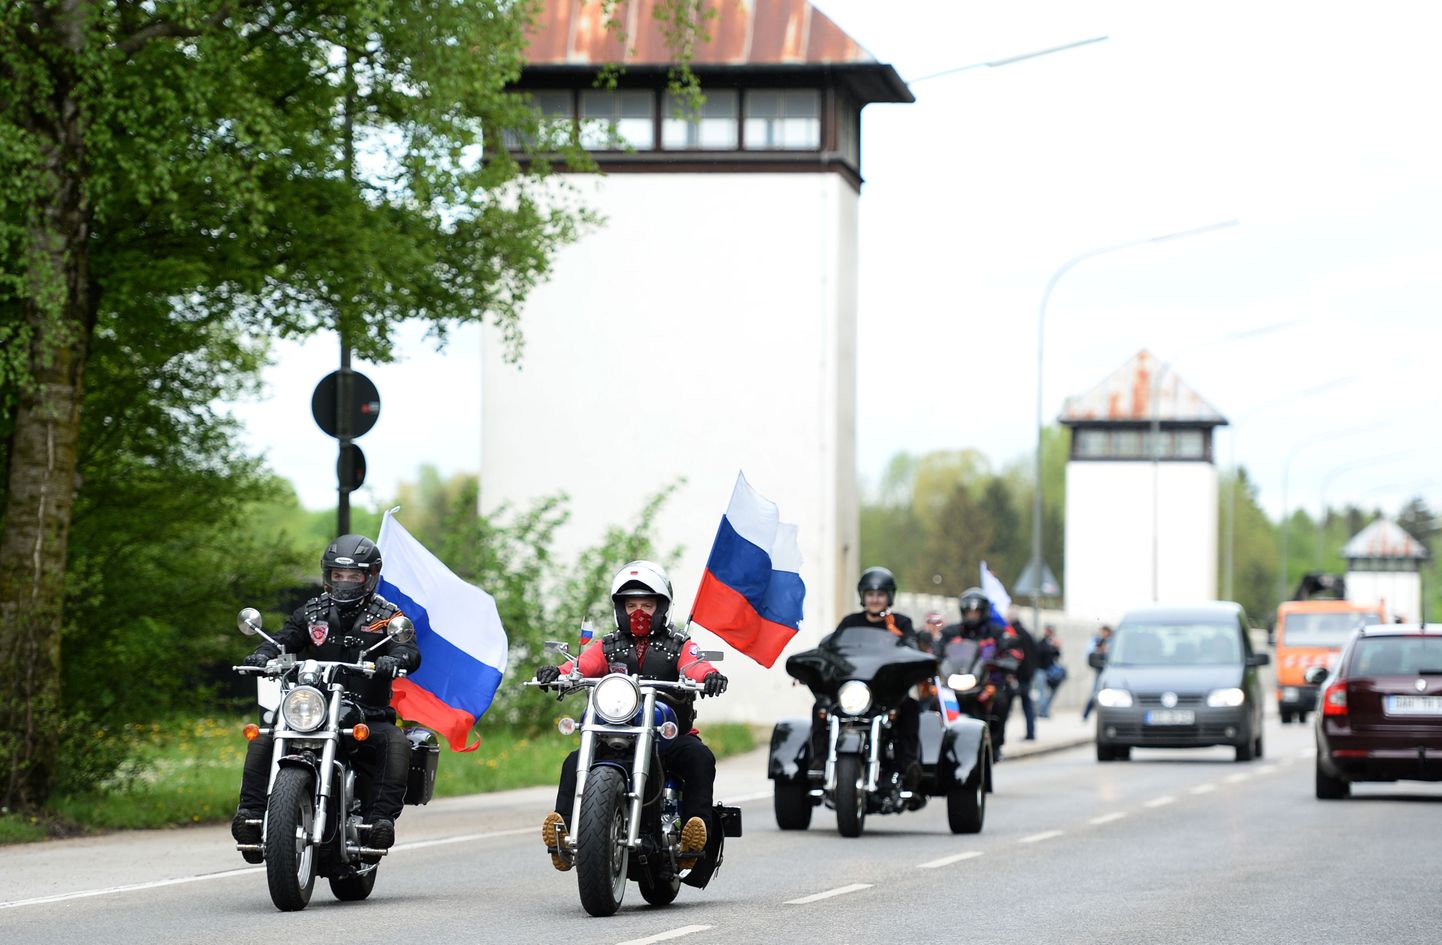 Три байкера, которые не смогли участвовать в мотопробеге «Дороги Победы», потому что им было отказано во въезде в Германию, проедут в мотоколонне сразу за военной техникой на параде в Севастополе 9 мая.